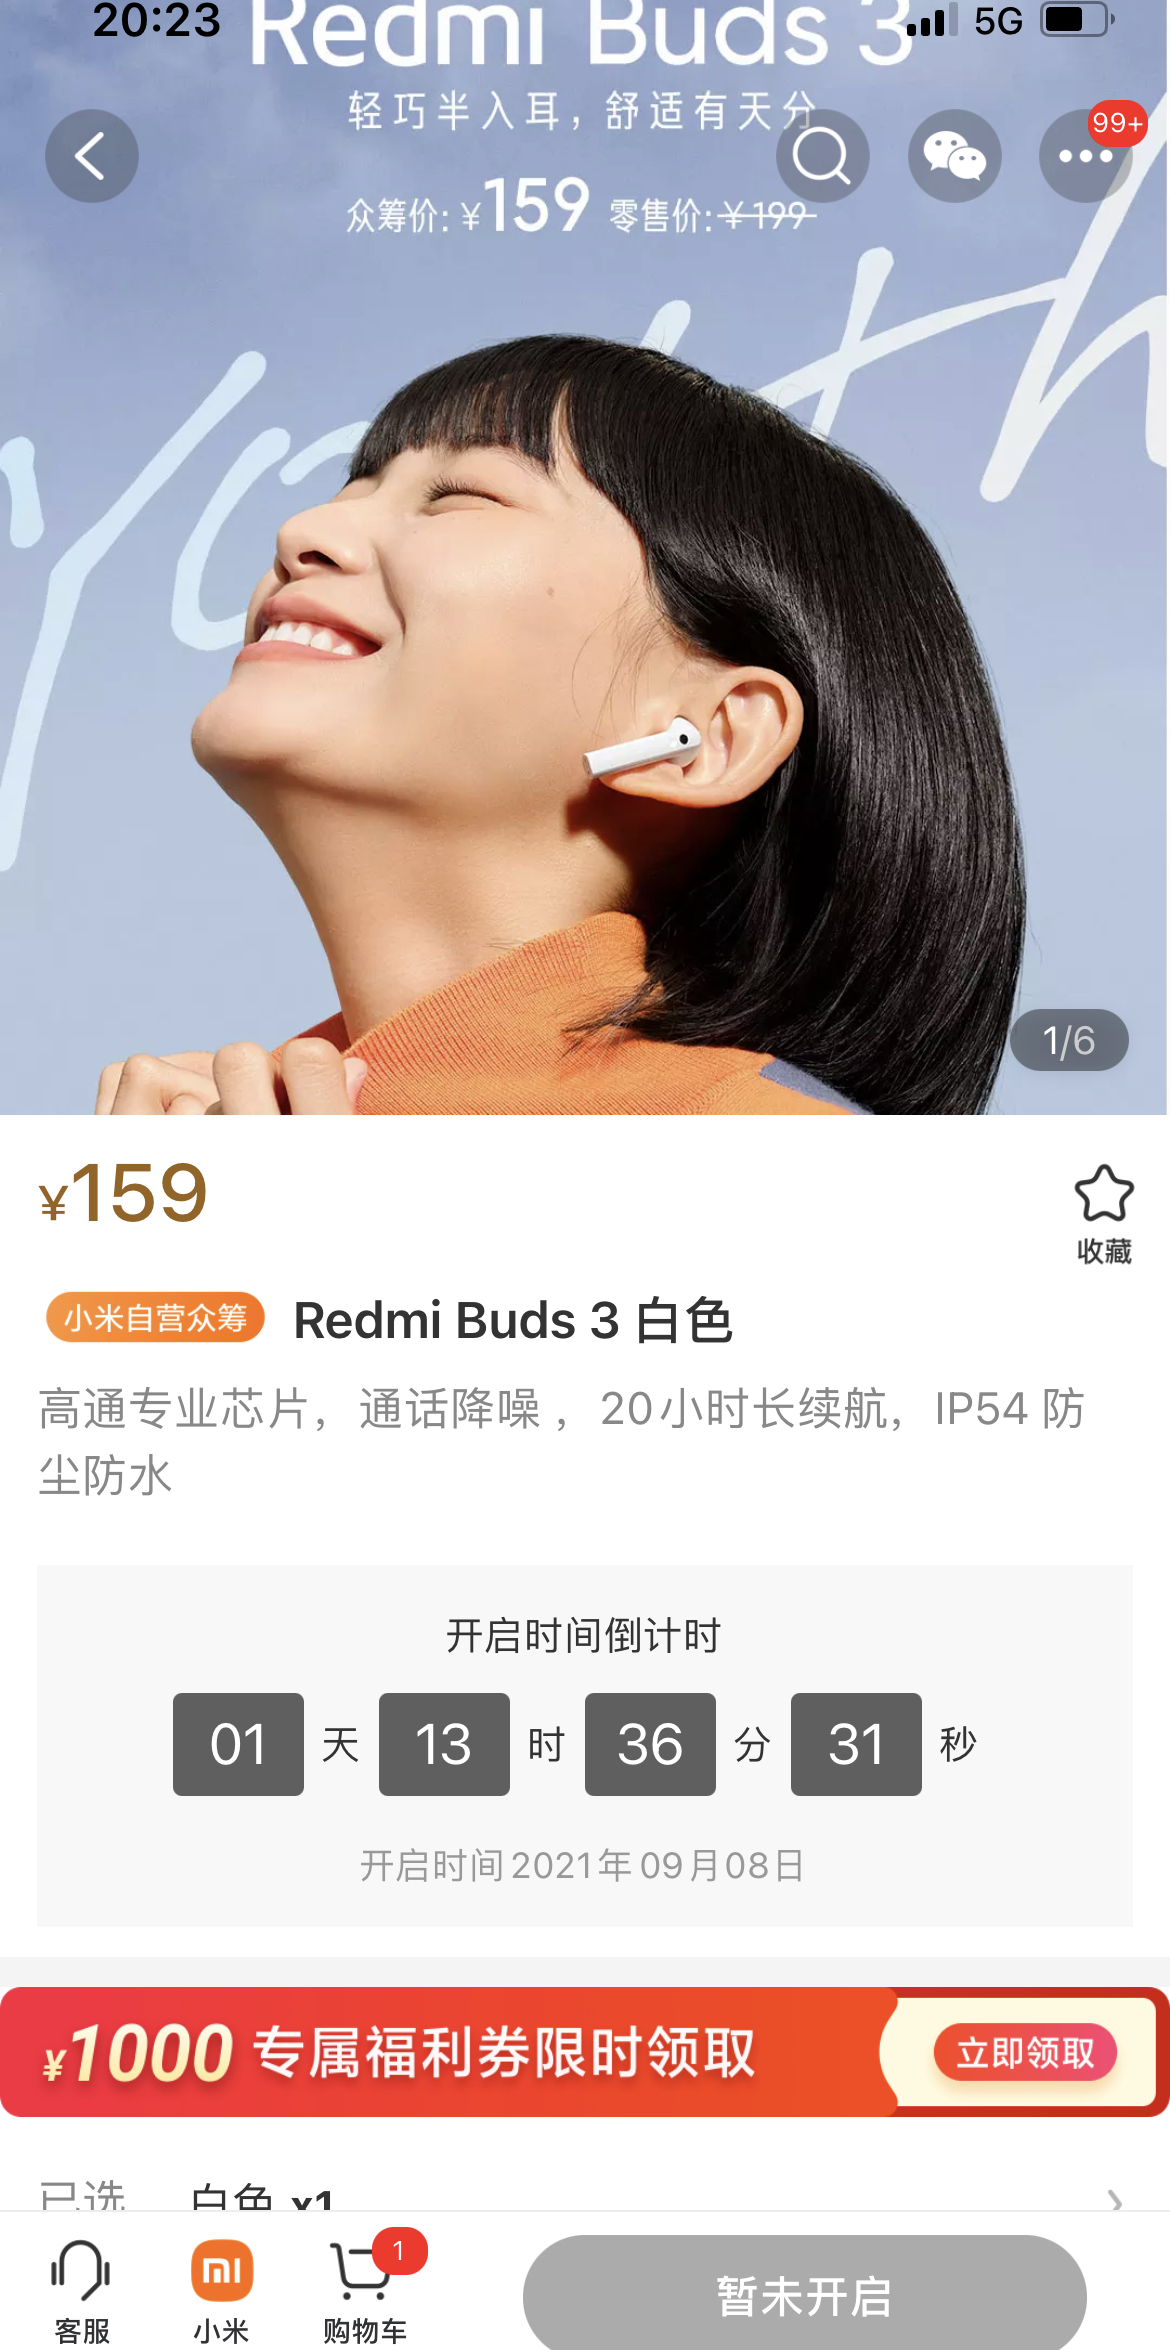 8日10点:redmi 红米 buds 3 无线蓝牙耳机